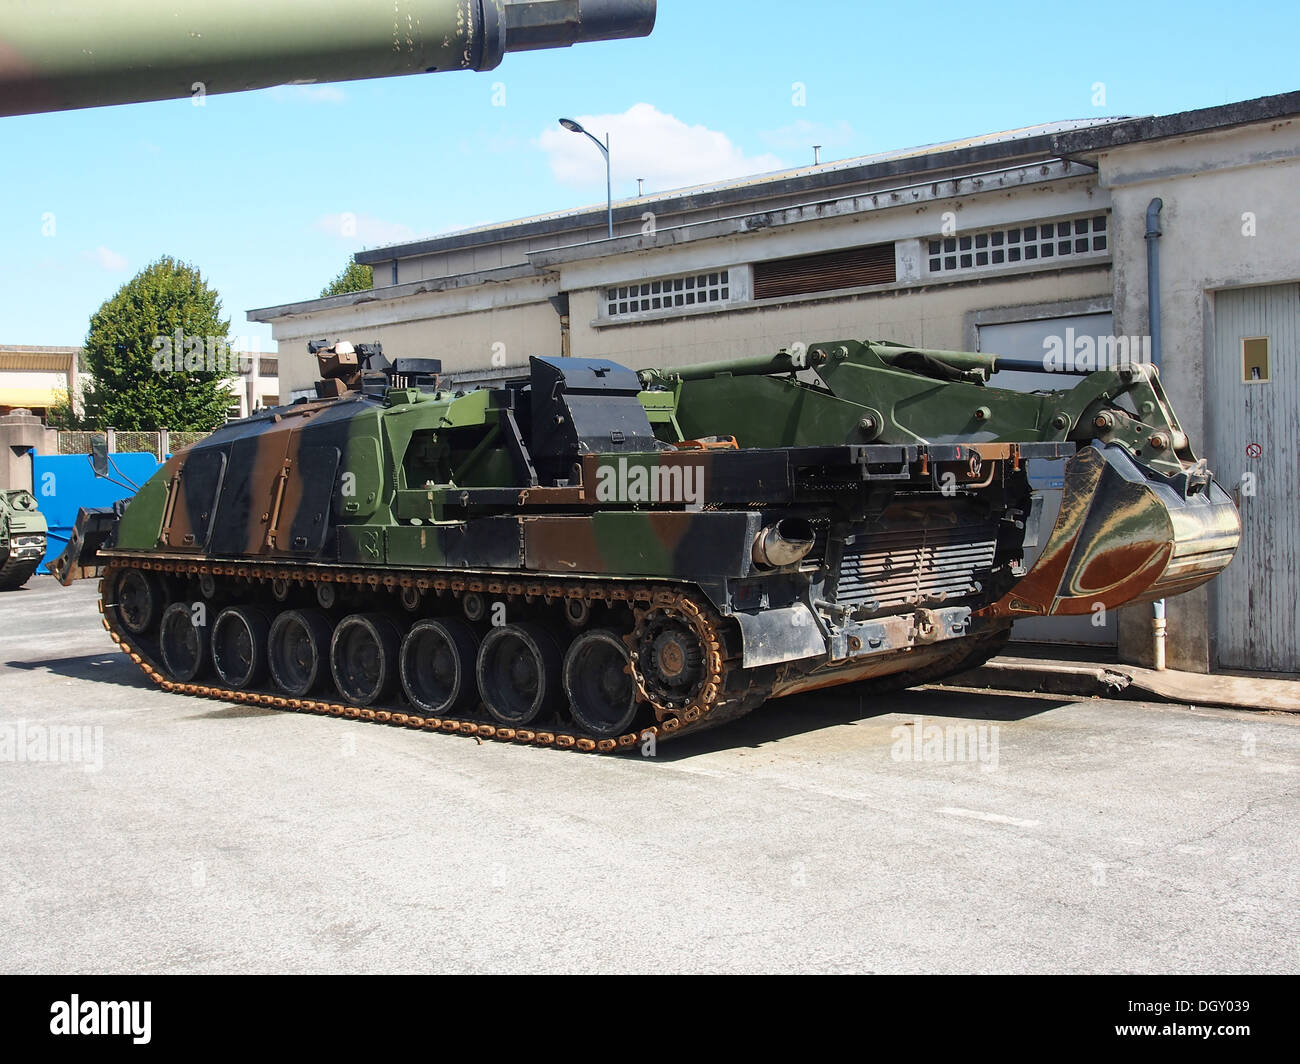 DNG-DCLTanks im Tank Museum, Saumur, Frankreich, Pic-1 Le Char de Dépannage DNG/DCL (Dépanneur Nouvelle Génération ou Dépanneur du Char Leclerc) est un-char de dépannage de la société Nexter. Ce modèle de char de dépannage est basé sur le châssis du Leclerc de remplacement des AMX-30 D Stockfoto